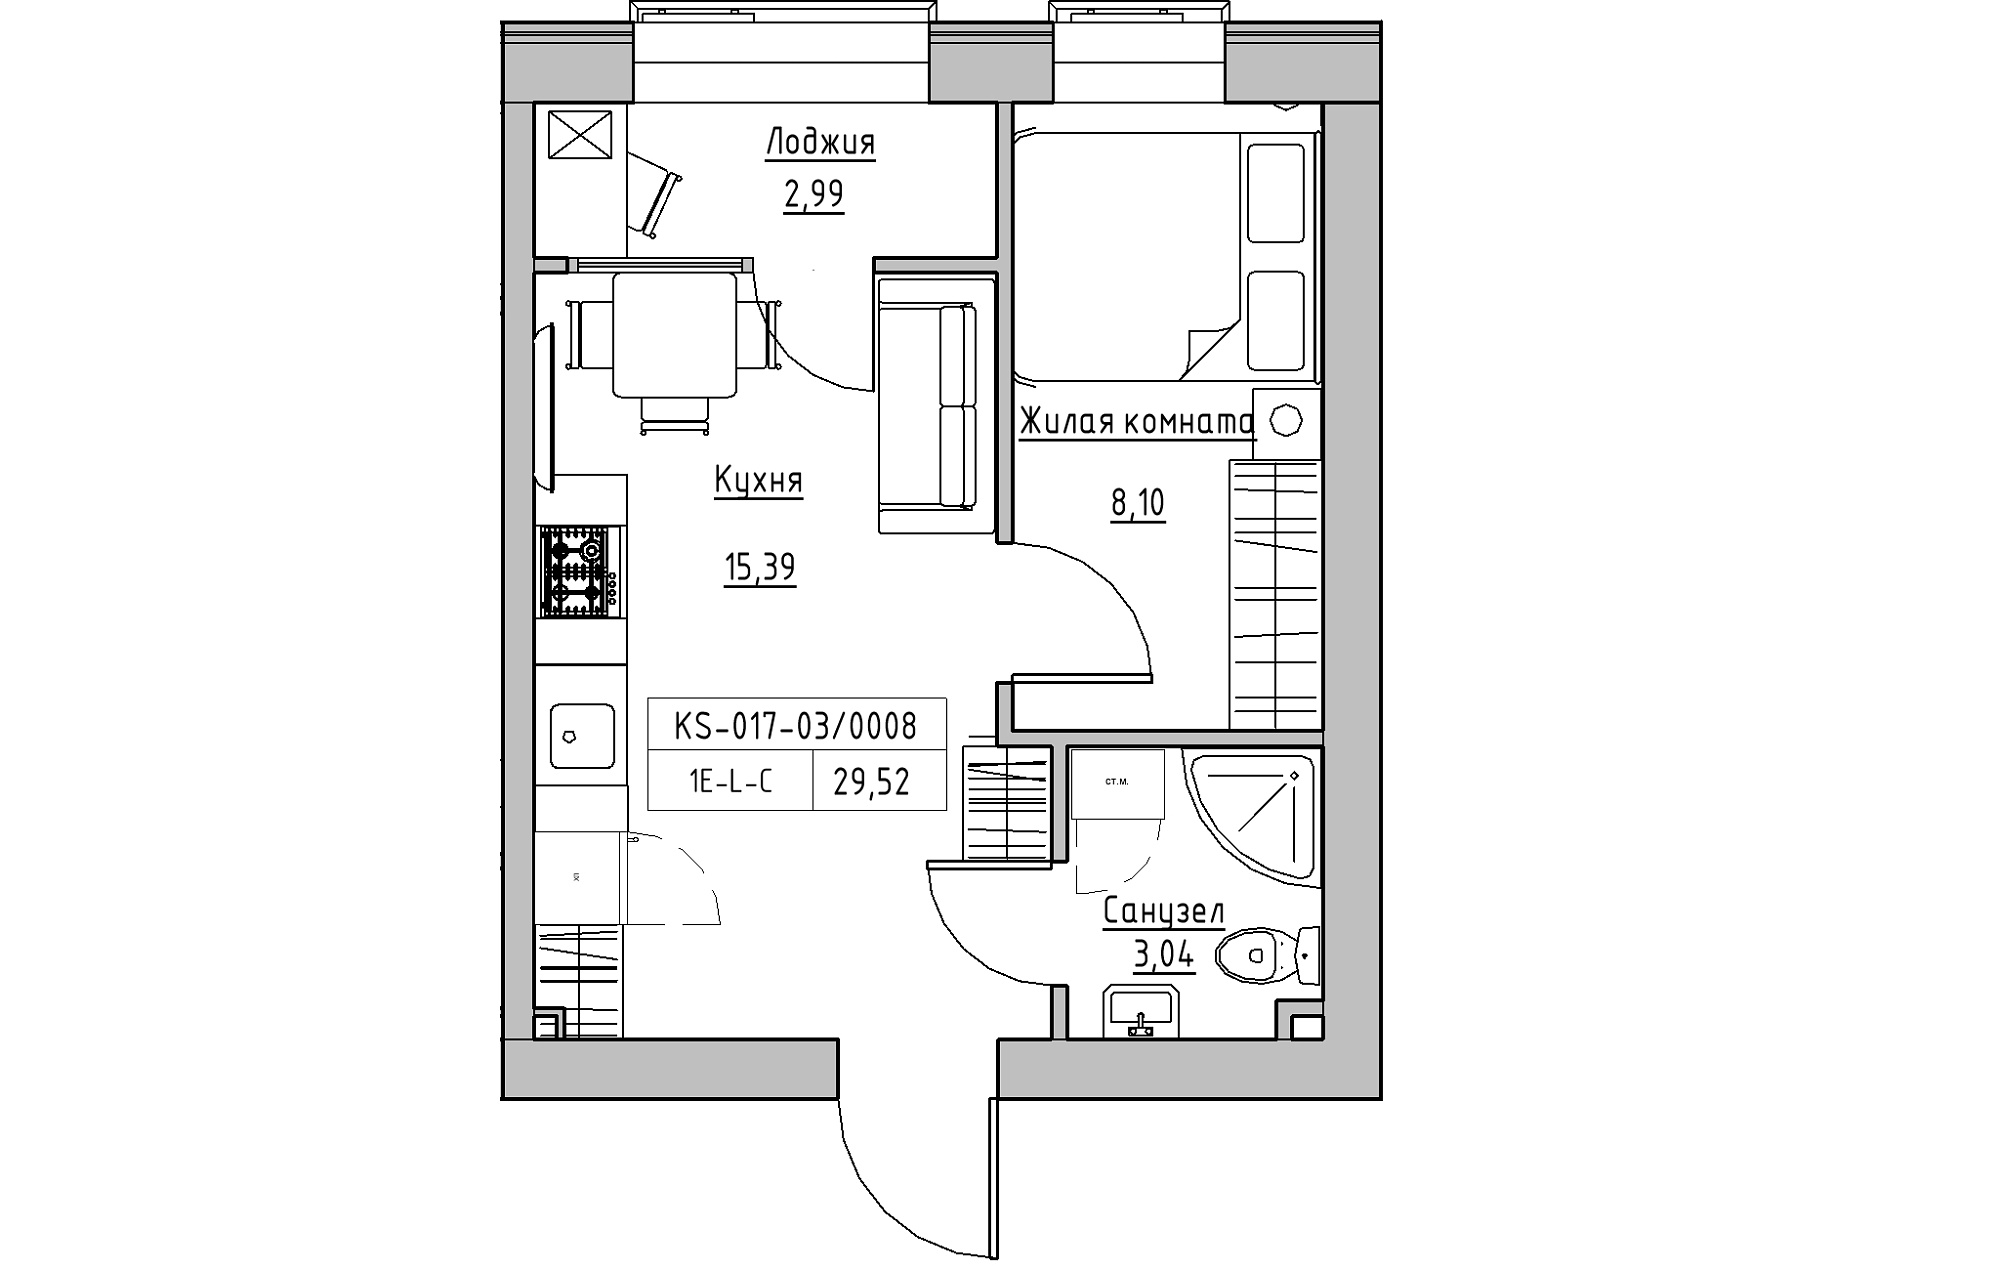 Планування 1-к квартира площею 29.52м2, KS-017-03/0008.